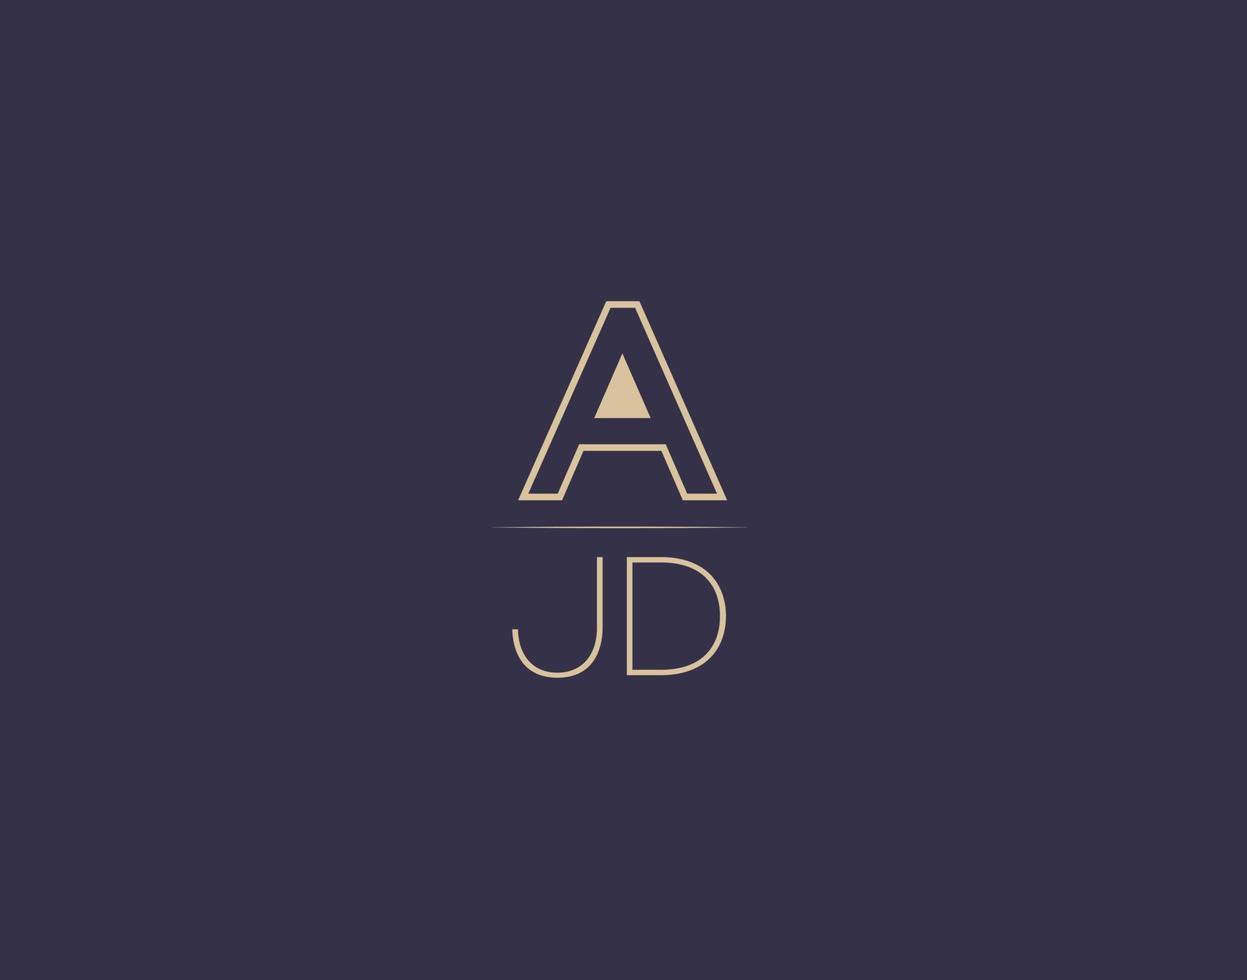 ajd carta logotipo diseño moderno minimalista vector imágenes